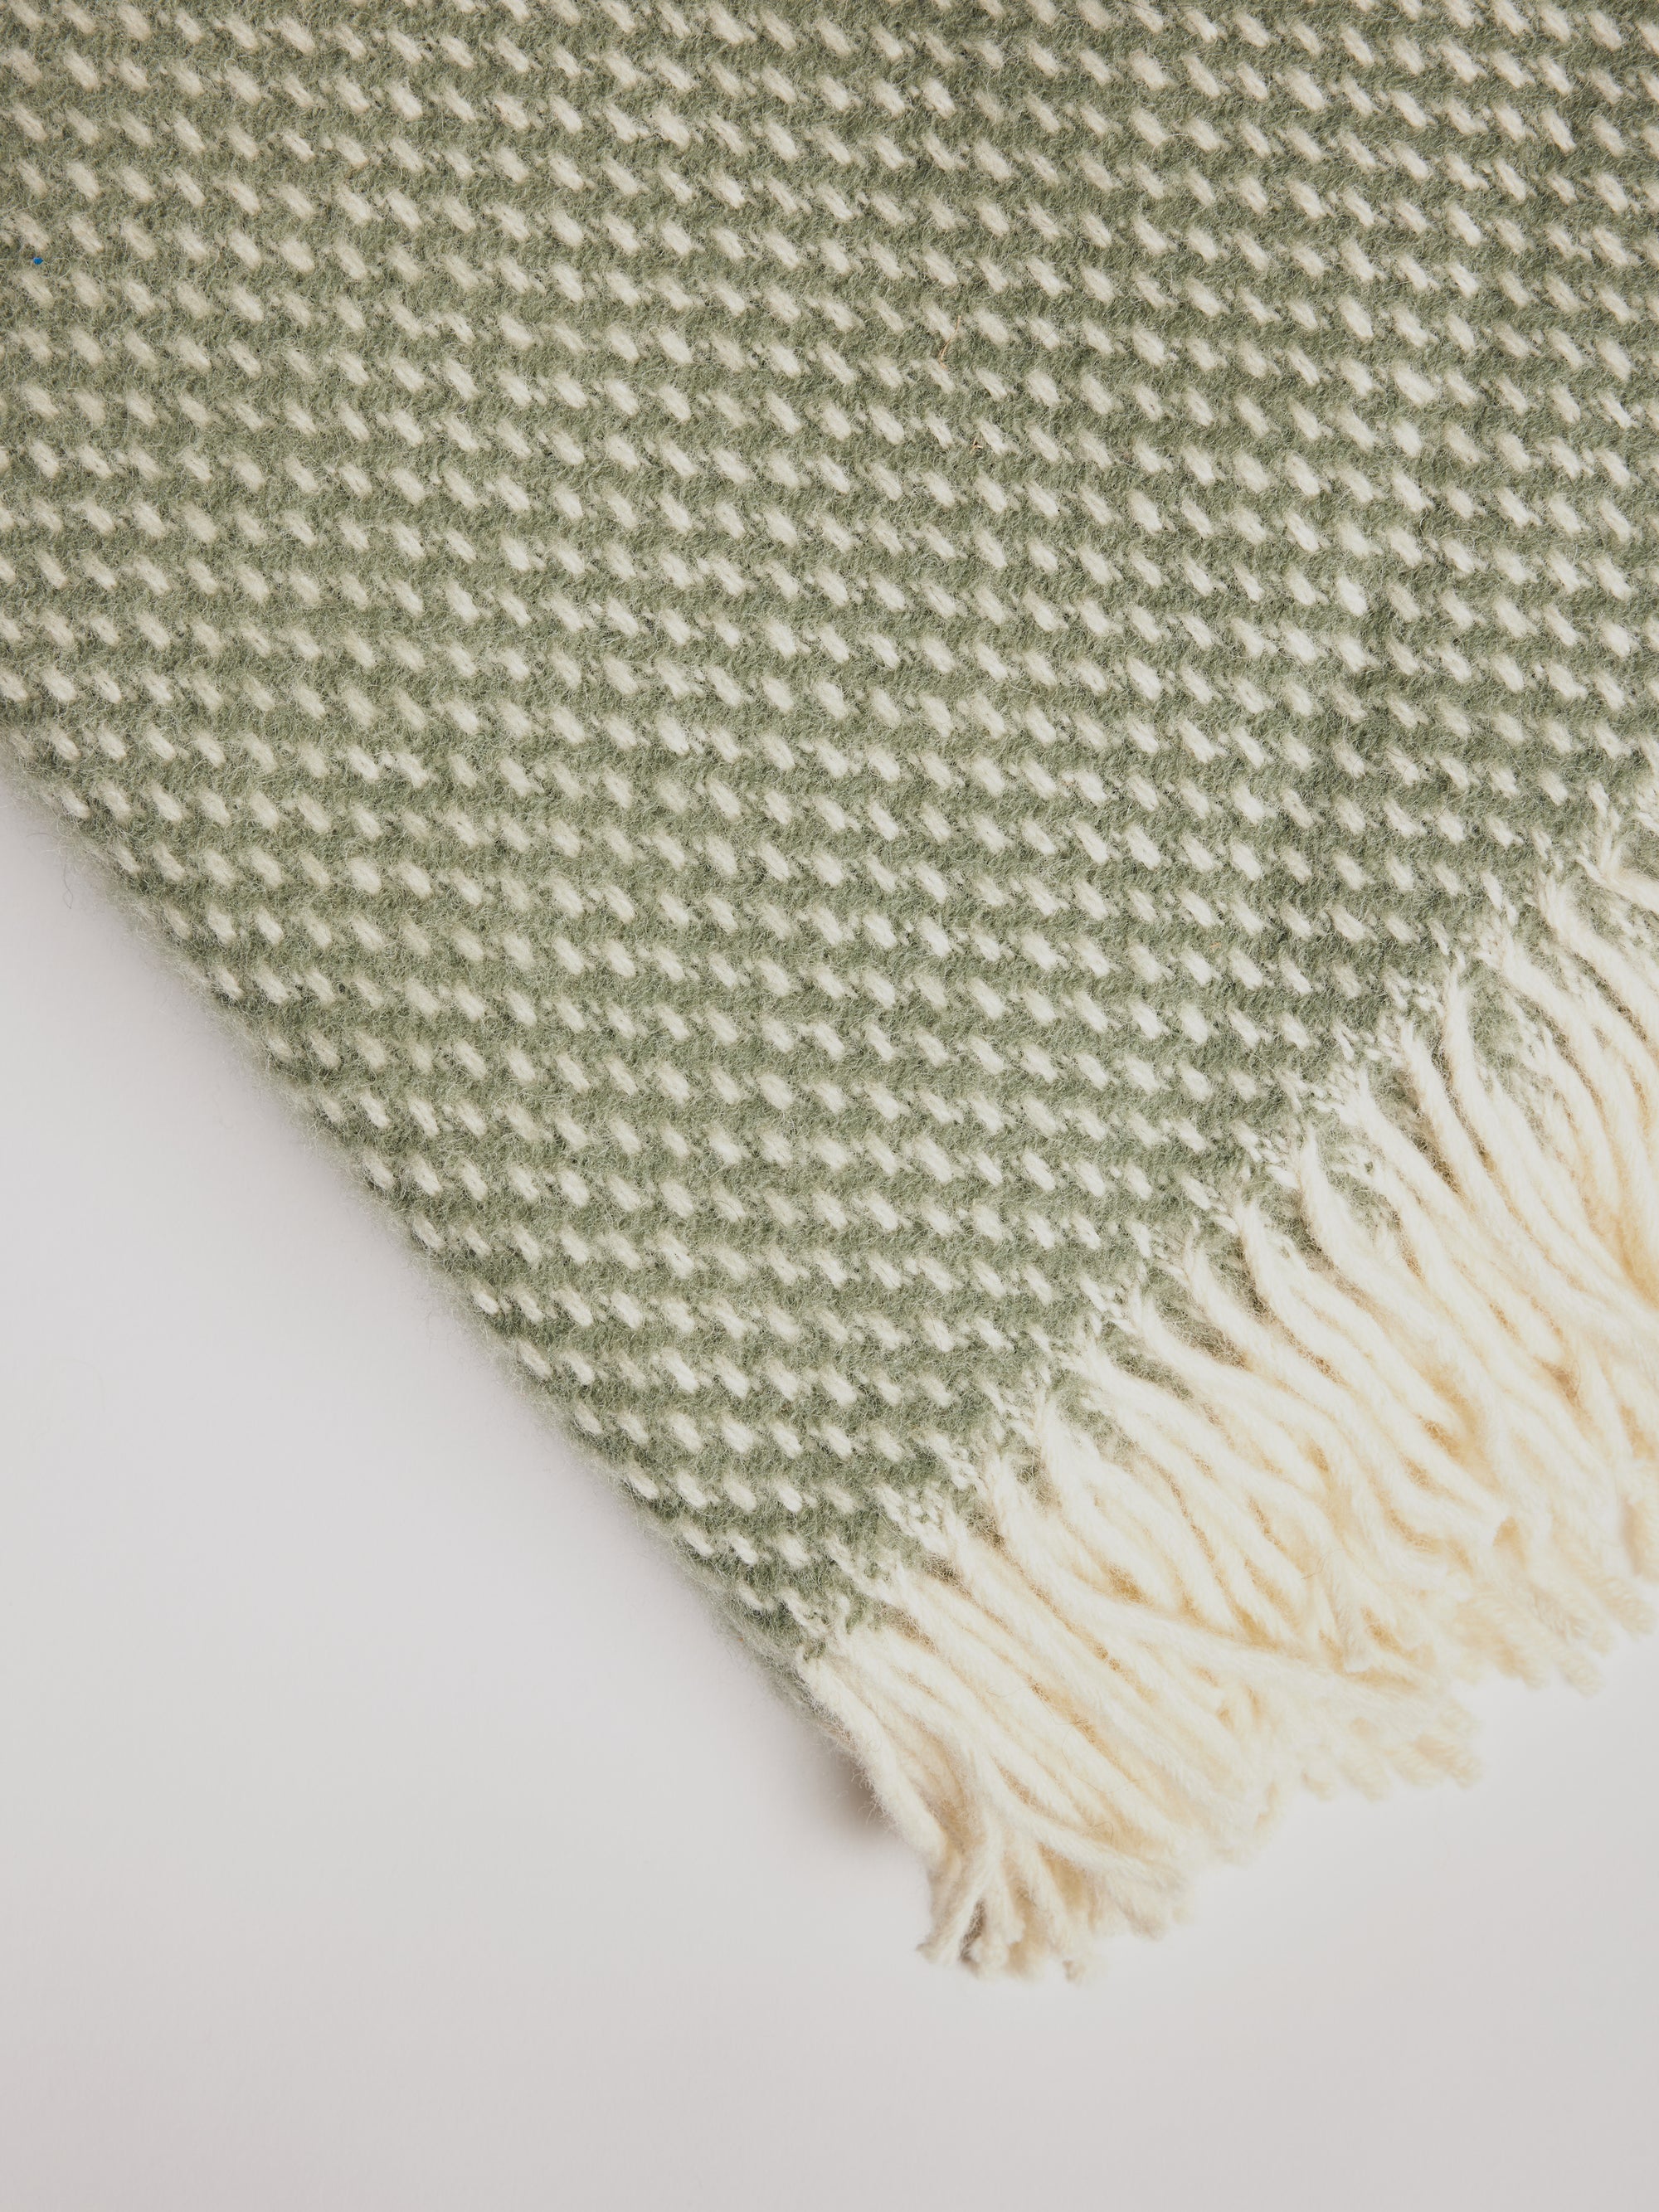 Woolen Blanket - Preppy Dusty Green - Cigale &  Fourmi